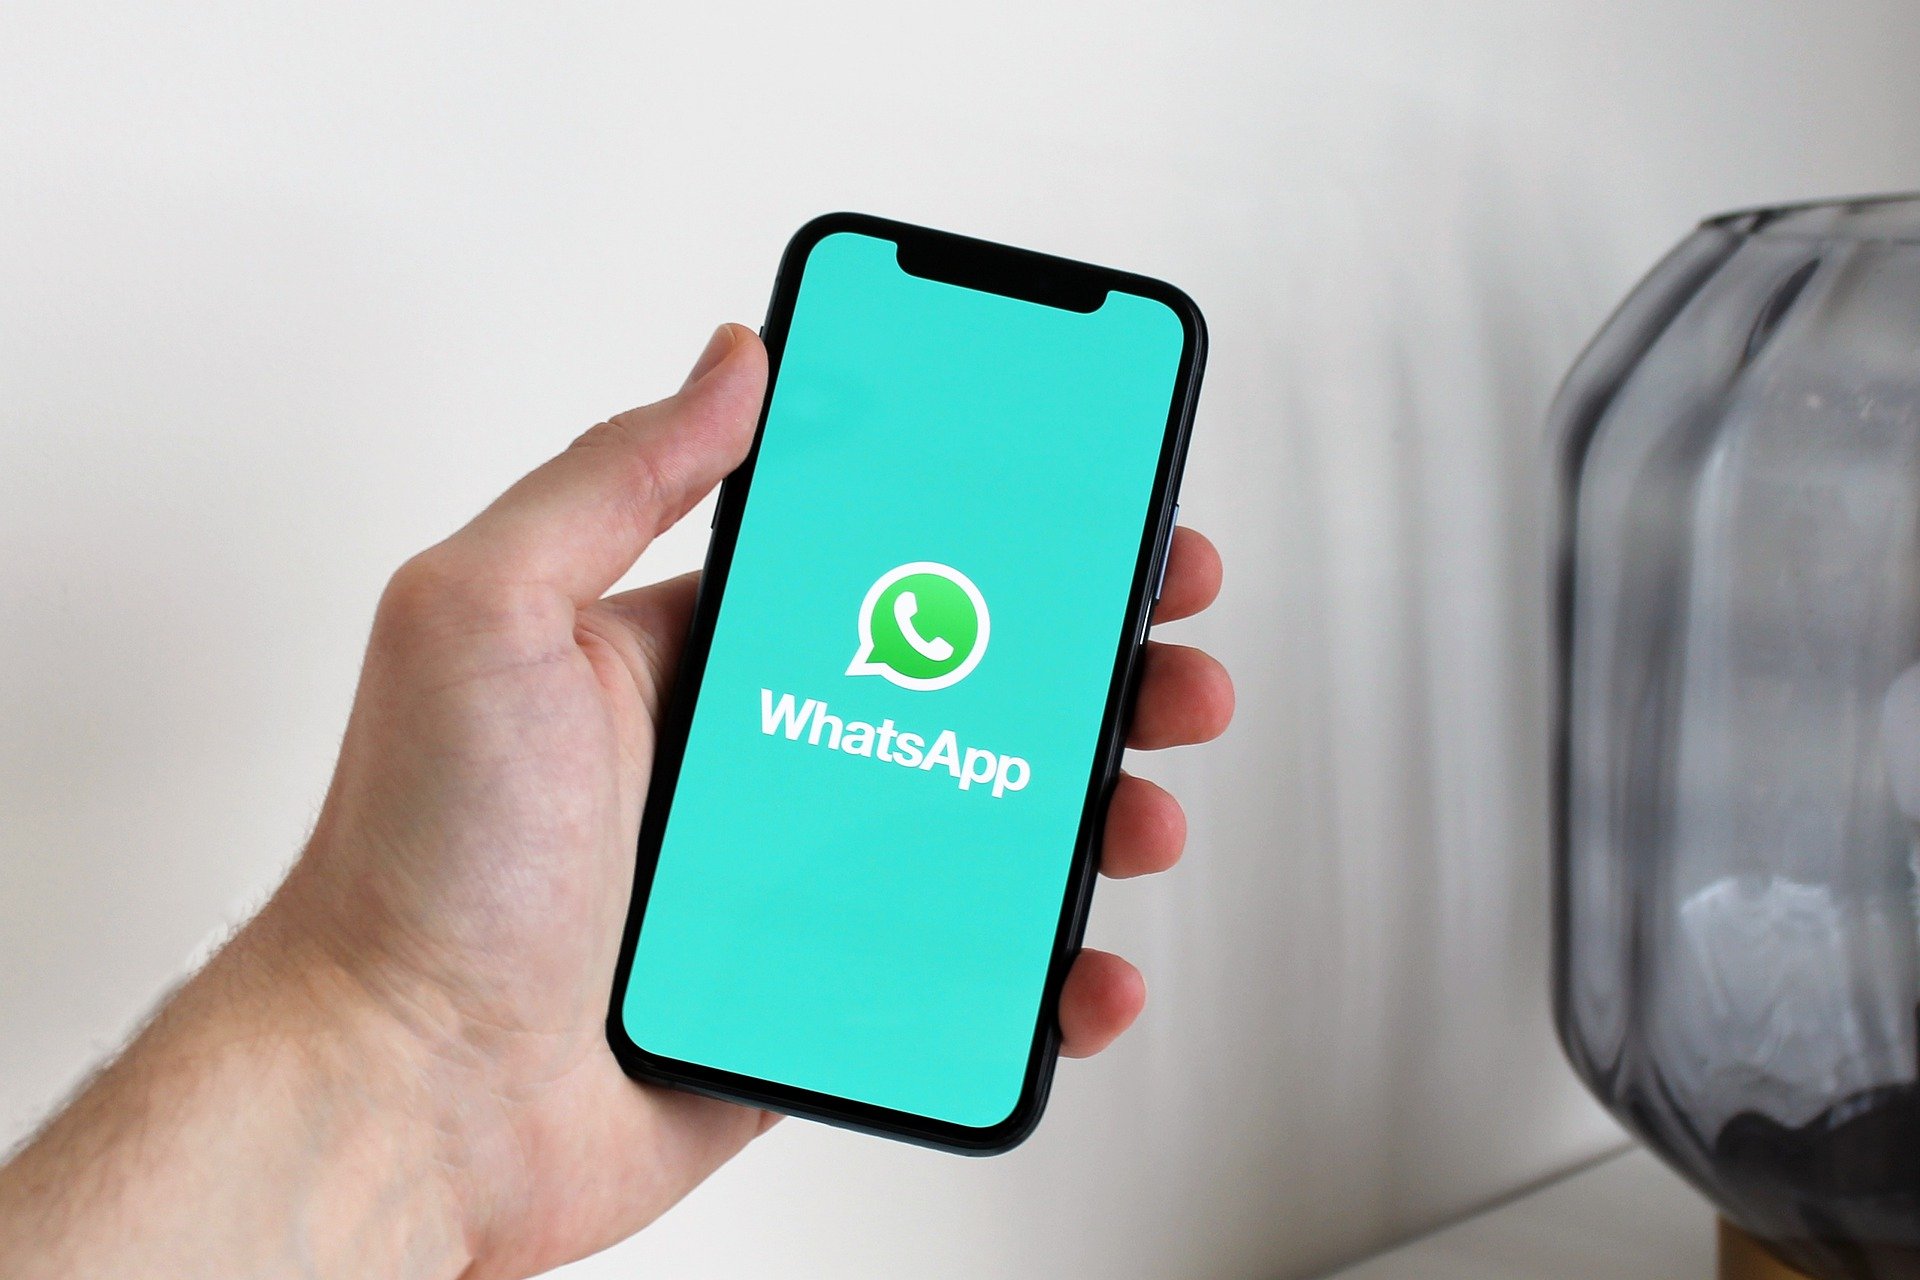 WhatsApp abandonará suporte para dispositivos IOS, saiba mais!